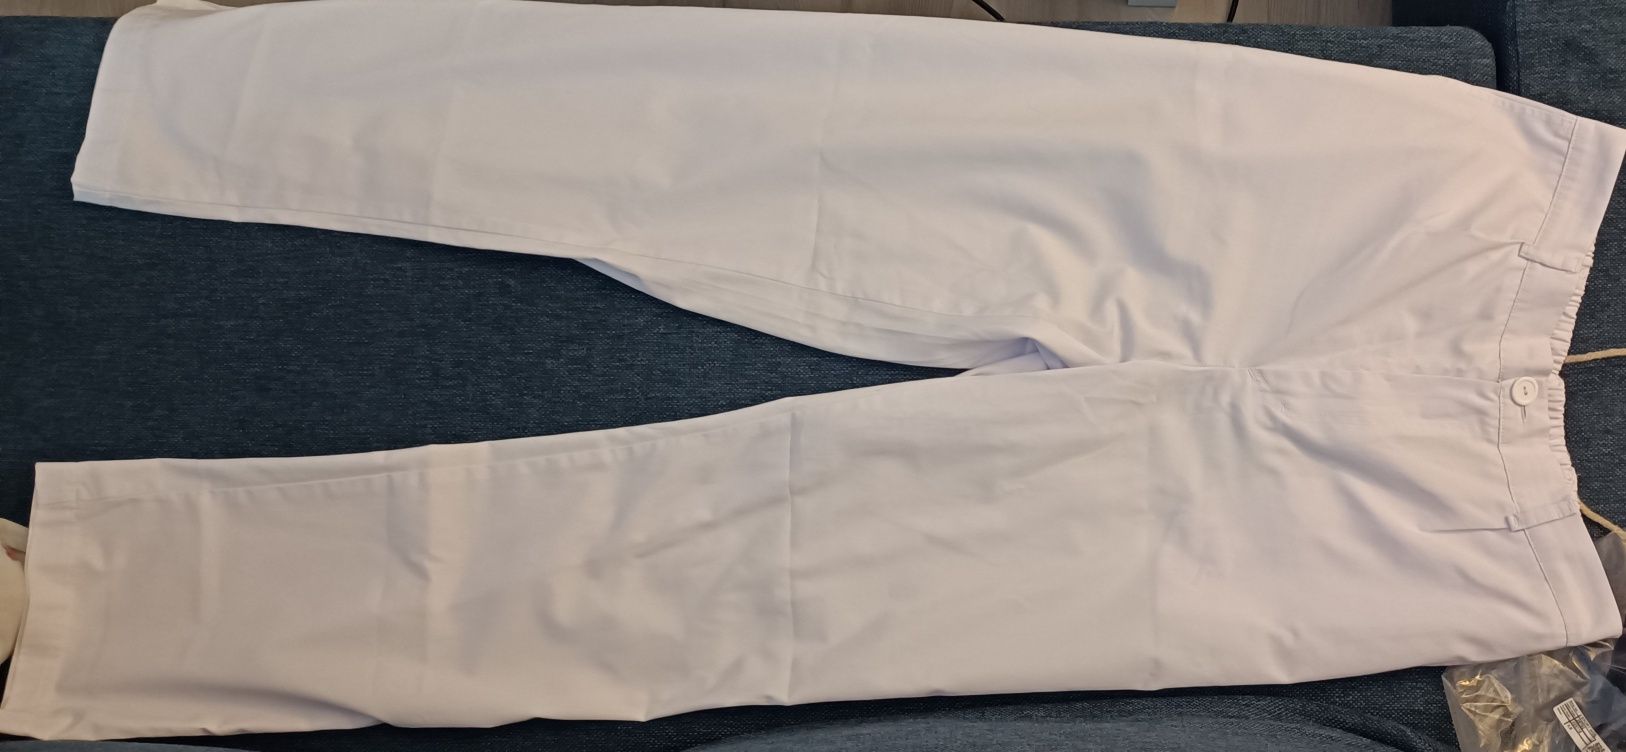 Spodnie medyczne męskie scrubs białe rozmiar M/L 48